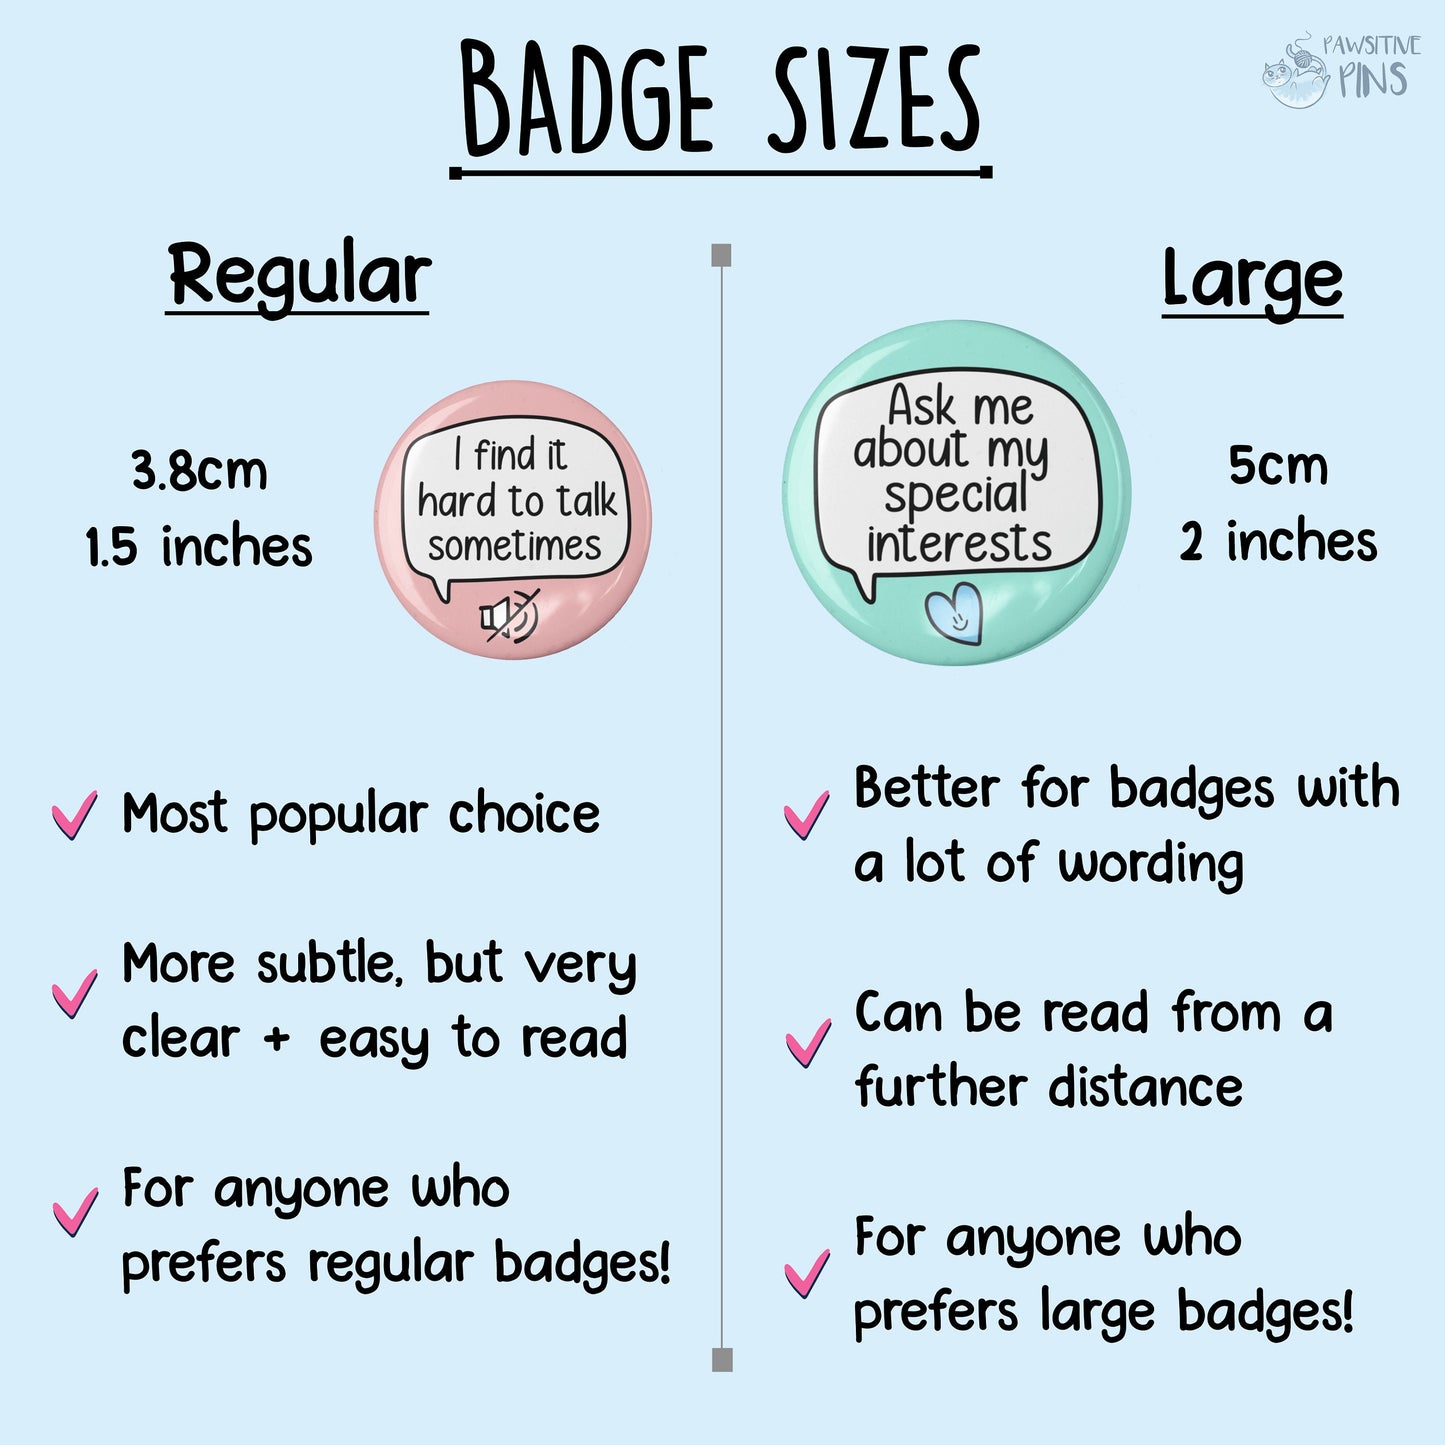 I'm A Little Bit Shy - Badge Pin | I'm Shy